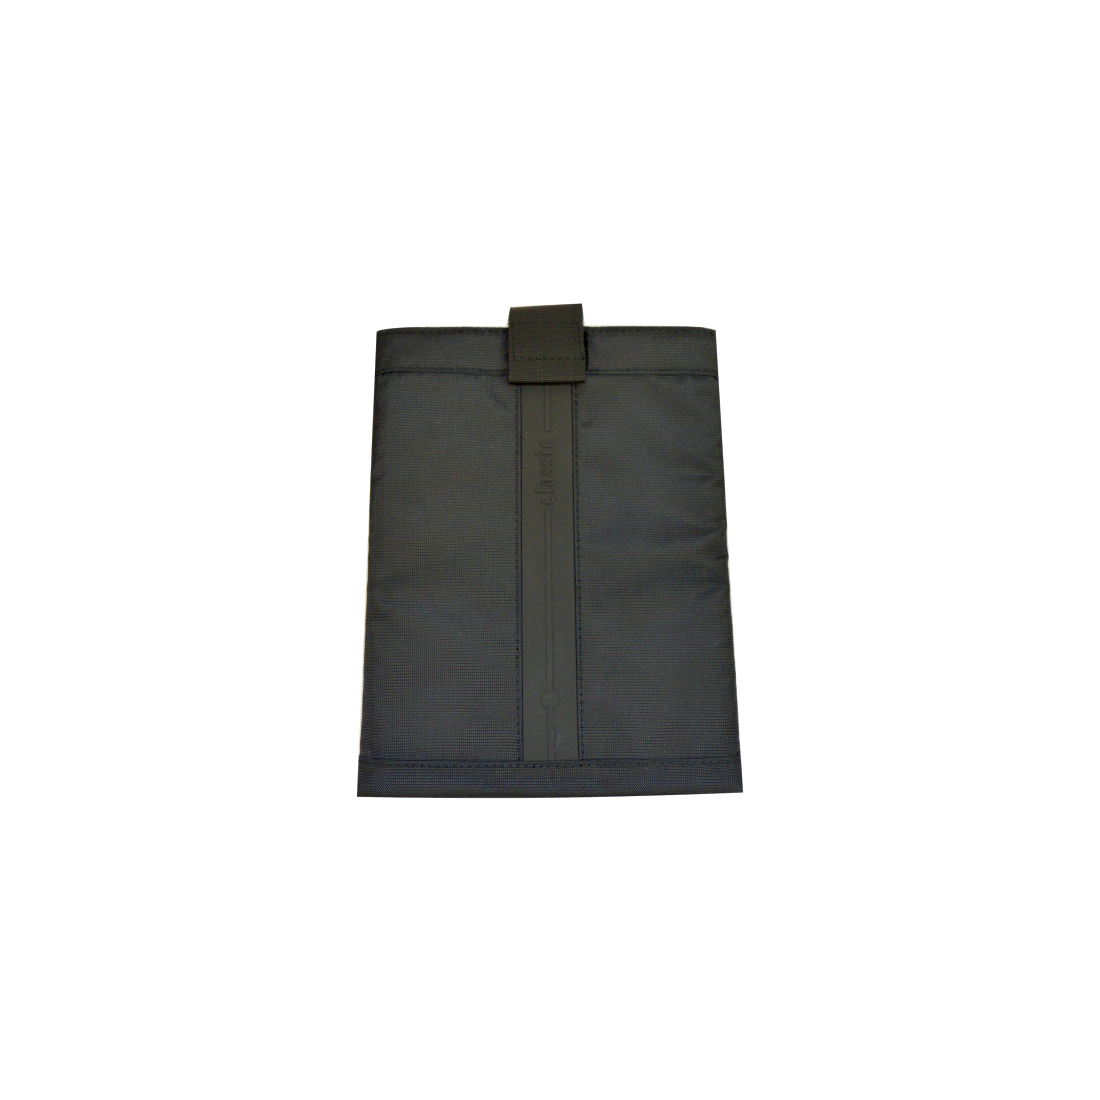 Husa tableta 22.2 cm, negru, Carrefour